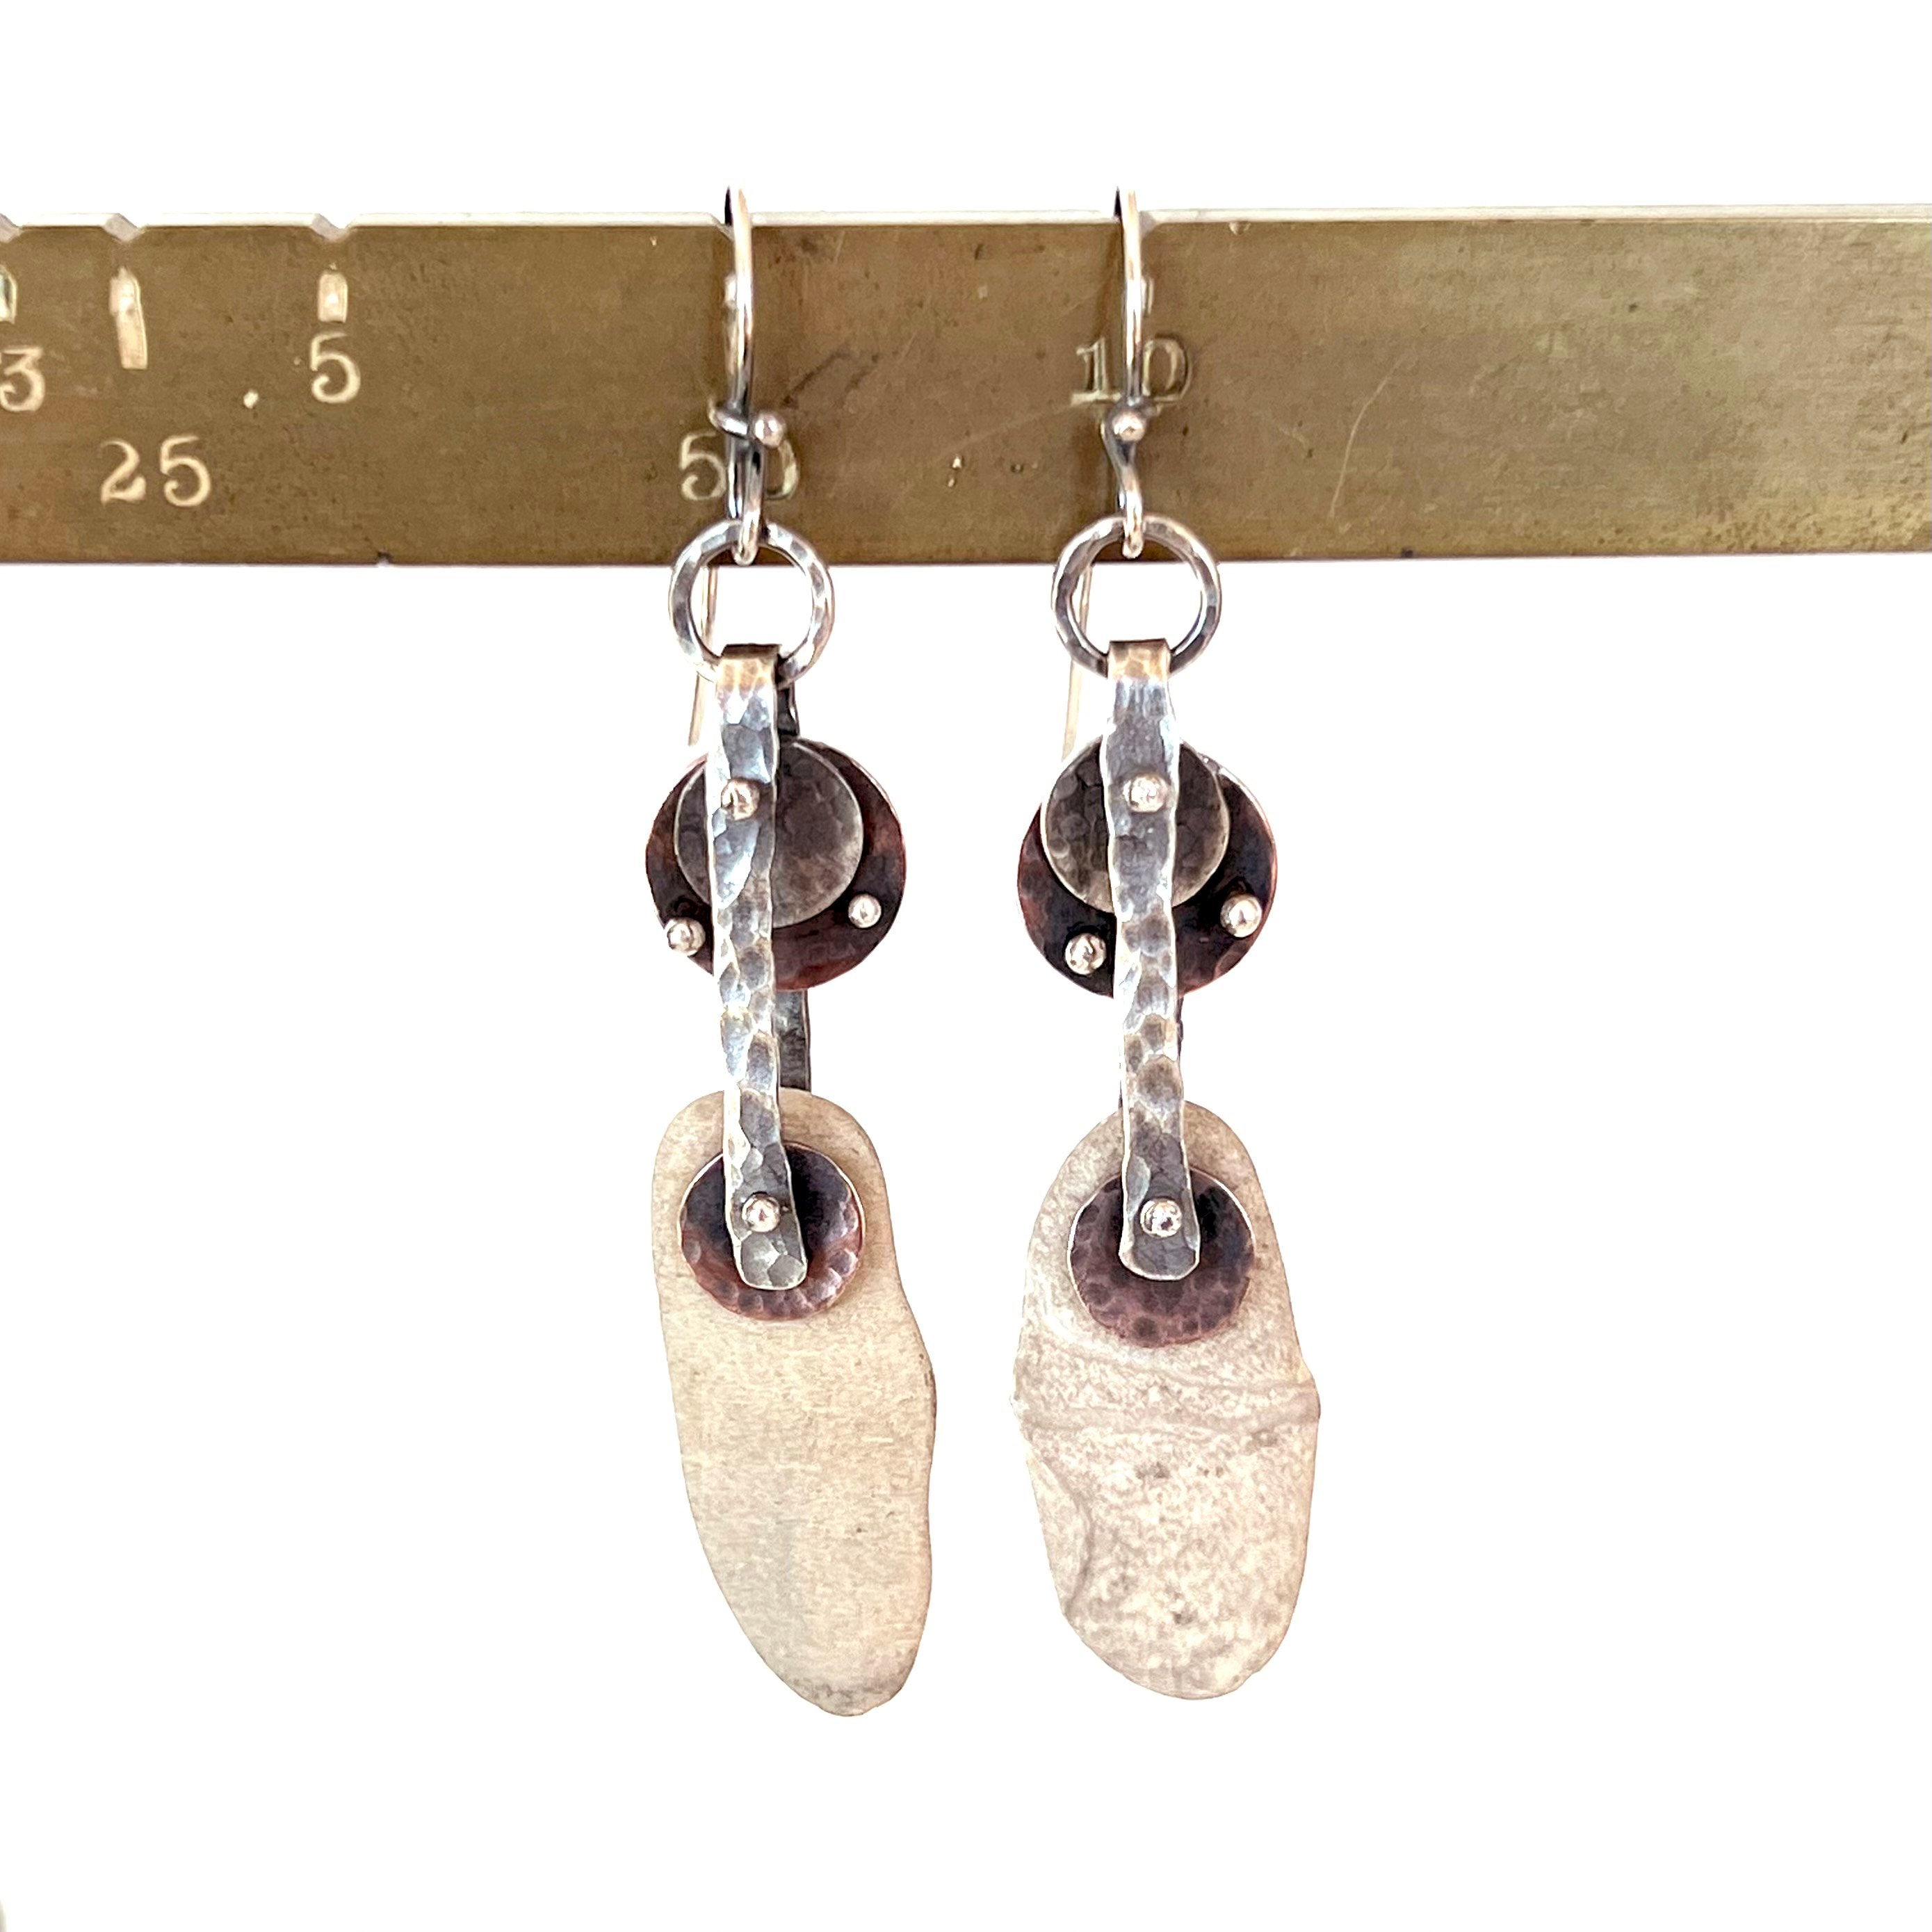 Riveted Geometric Hoop Earrings - Sterling Silver - Copper - Beach Stones